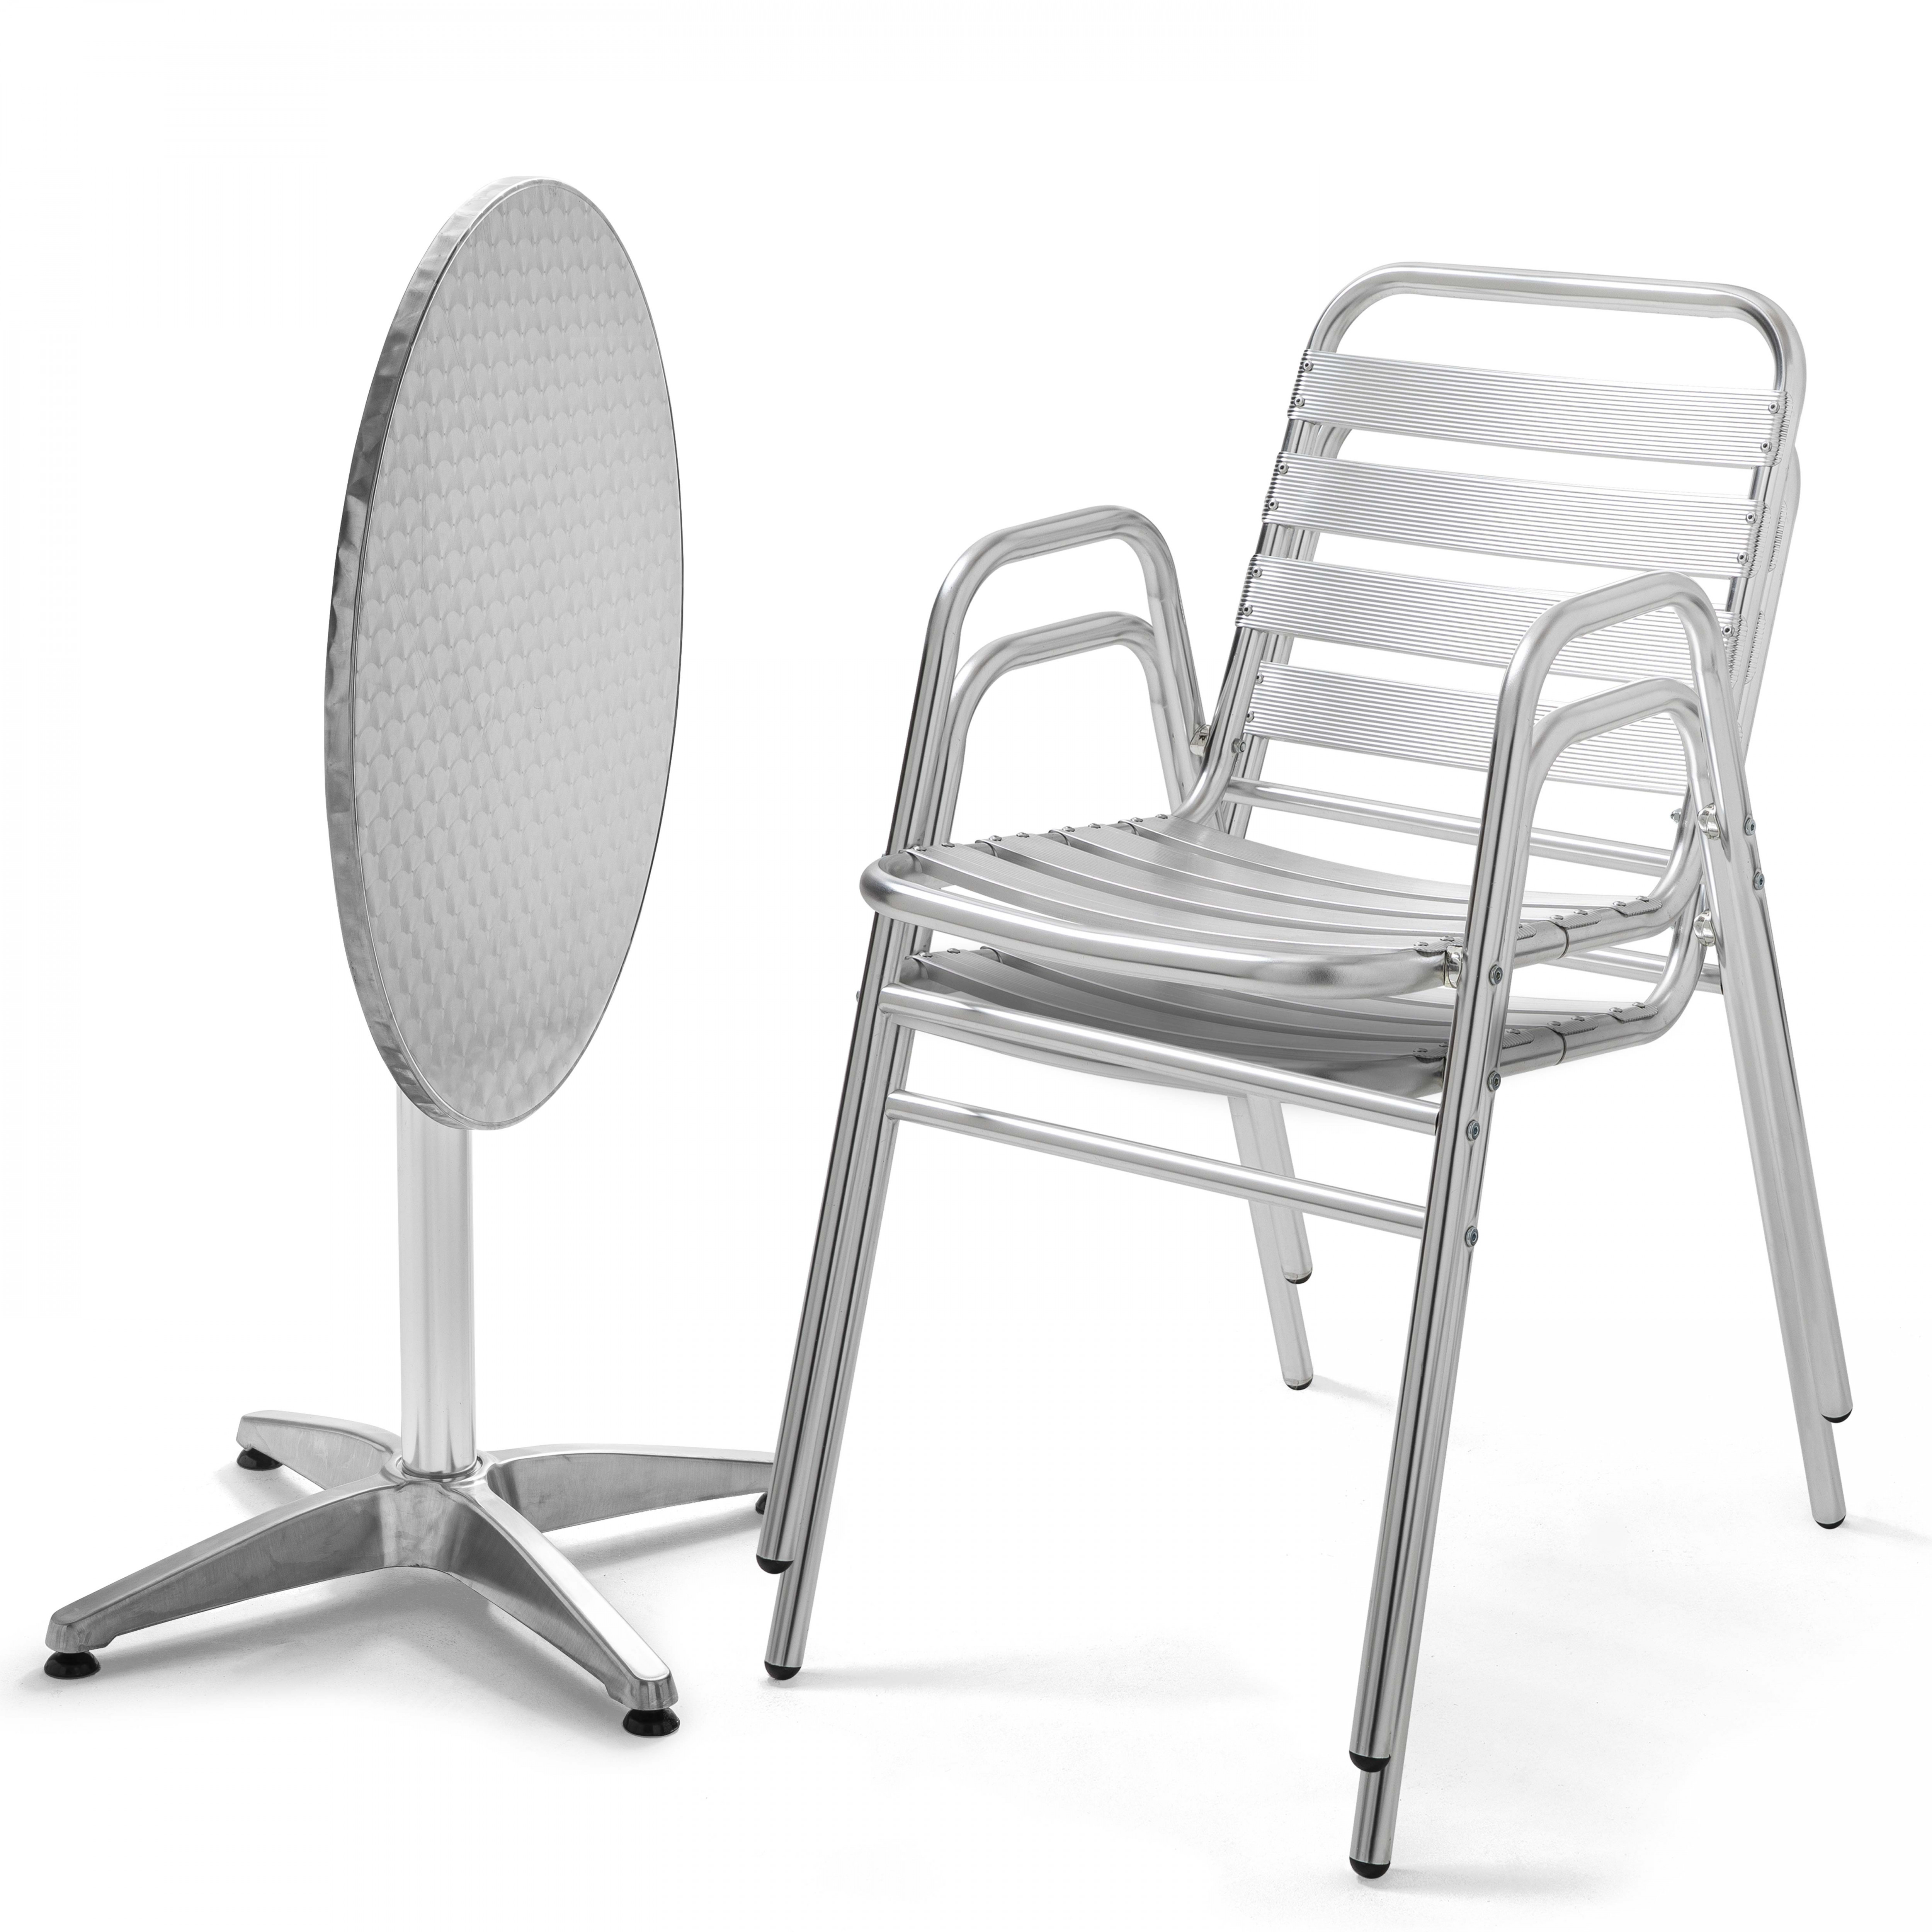 Table de jardin ronde et 2 chaises aluminium gris